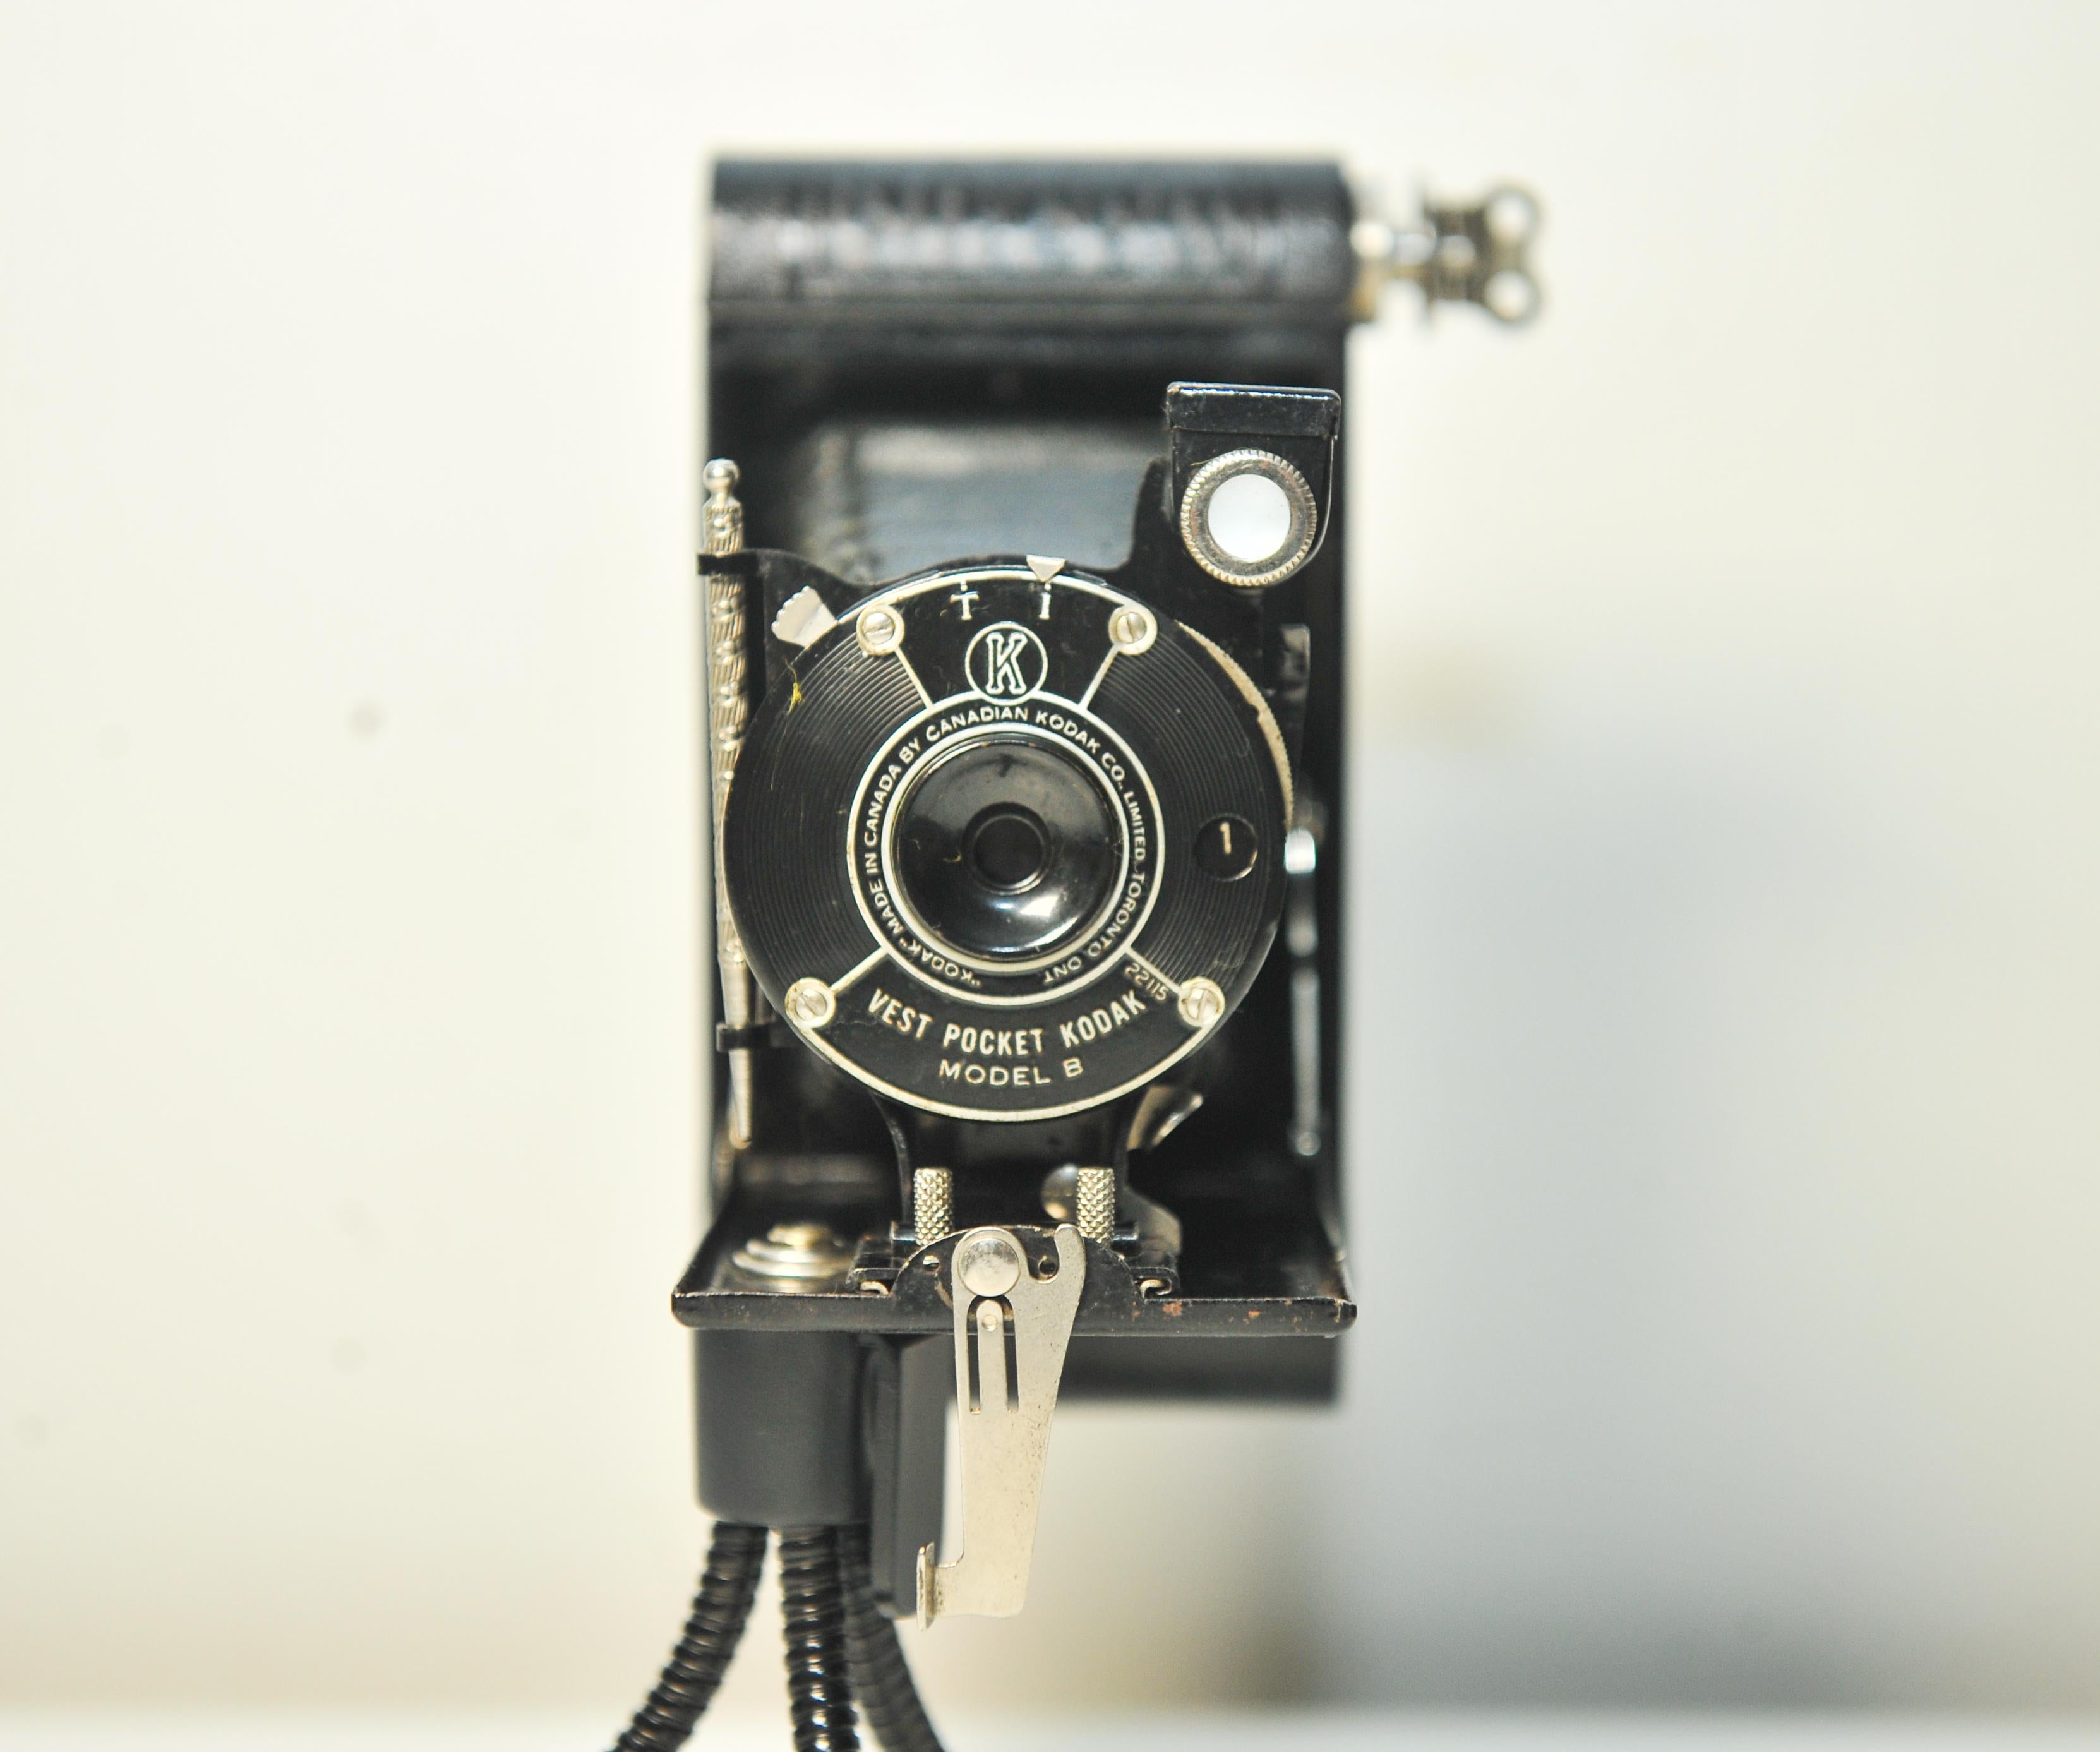 Art Deco Canadien Kodak Vest Pocket Kodak Model B 127 Film Folding Bellow Camera Made in Toronto, Ontario Canada 1925-34

Modèle ref 22115

Il s'agissait d'un appareil photo tout à fait différent, un appareil primitif à lit pliant permettant de